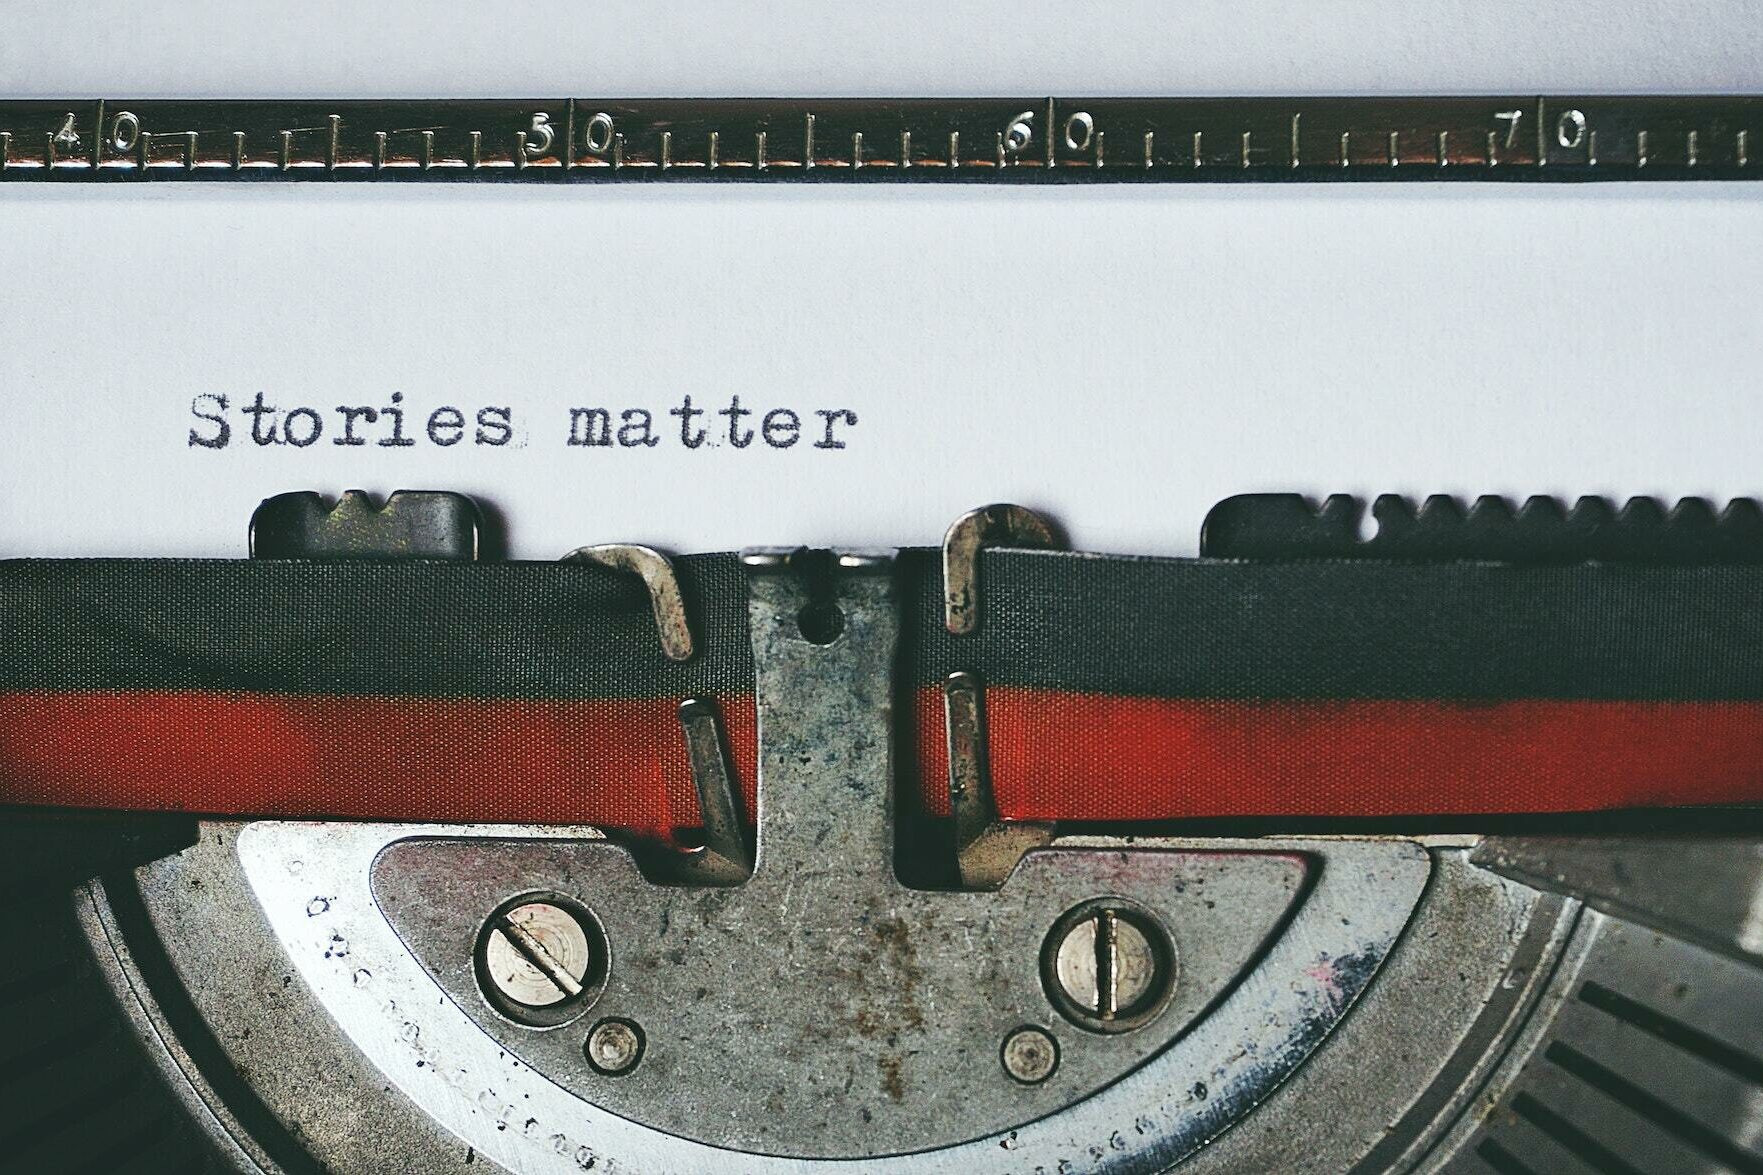 Schreibmaschine mit den Worten "Stories matter" auf einem Blatt